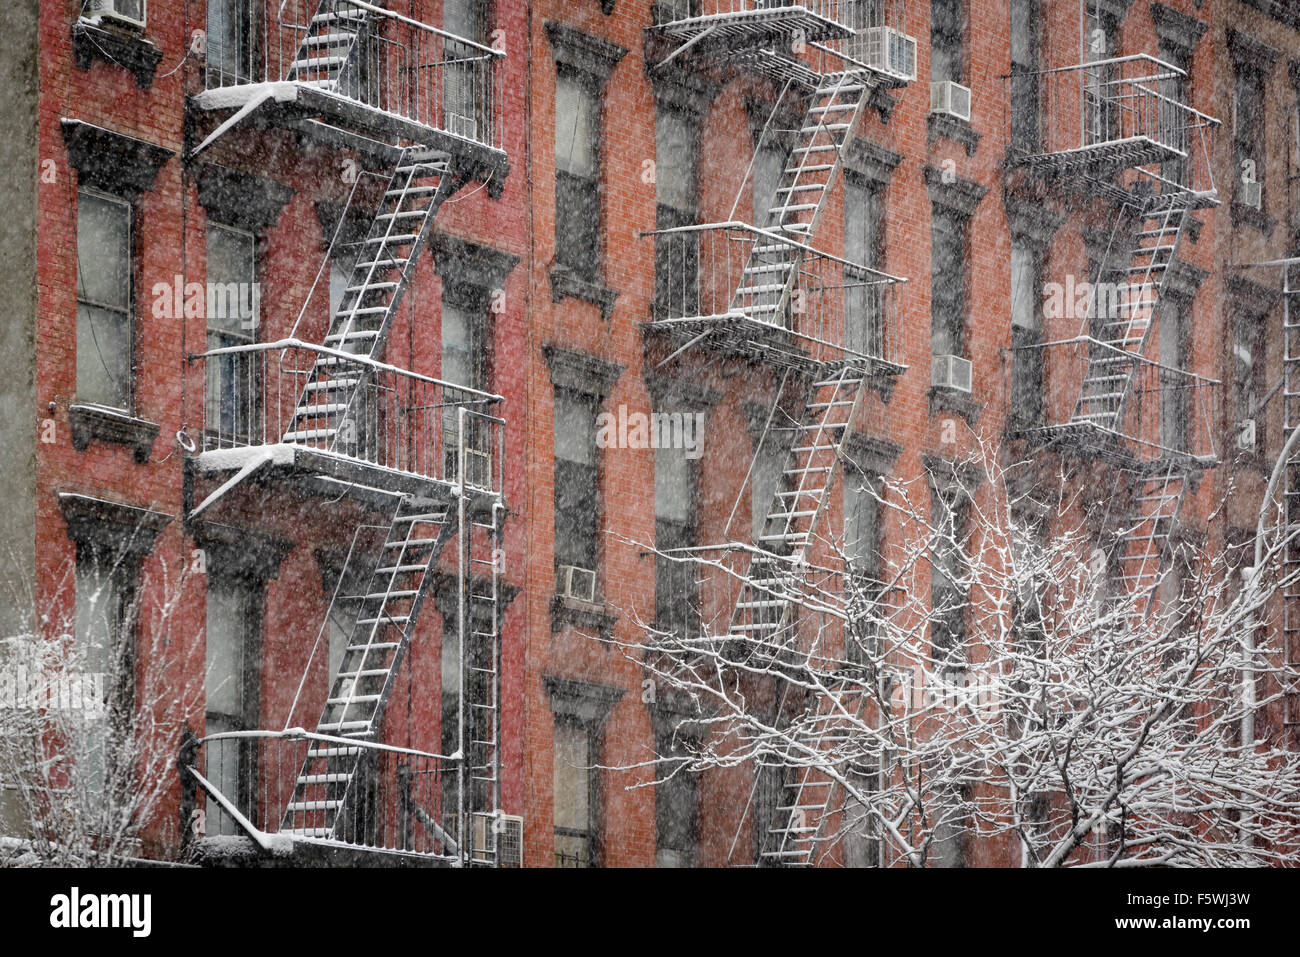 Façade de l'immeuble en briques avec Chelsea fire escapes couvertes de neige pendant un hiver de neige, Manhattan, New York City Banque D'Images